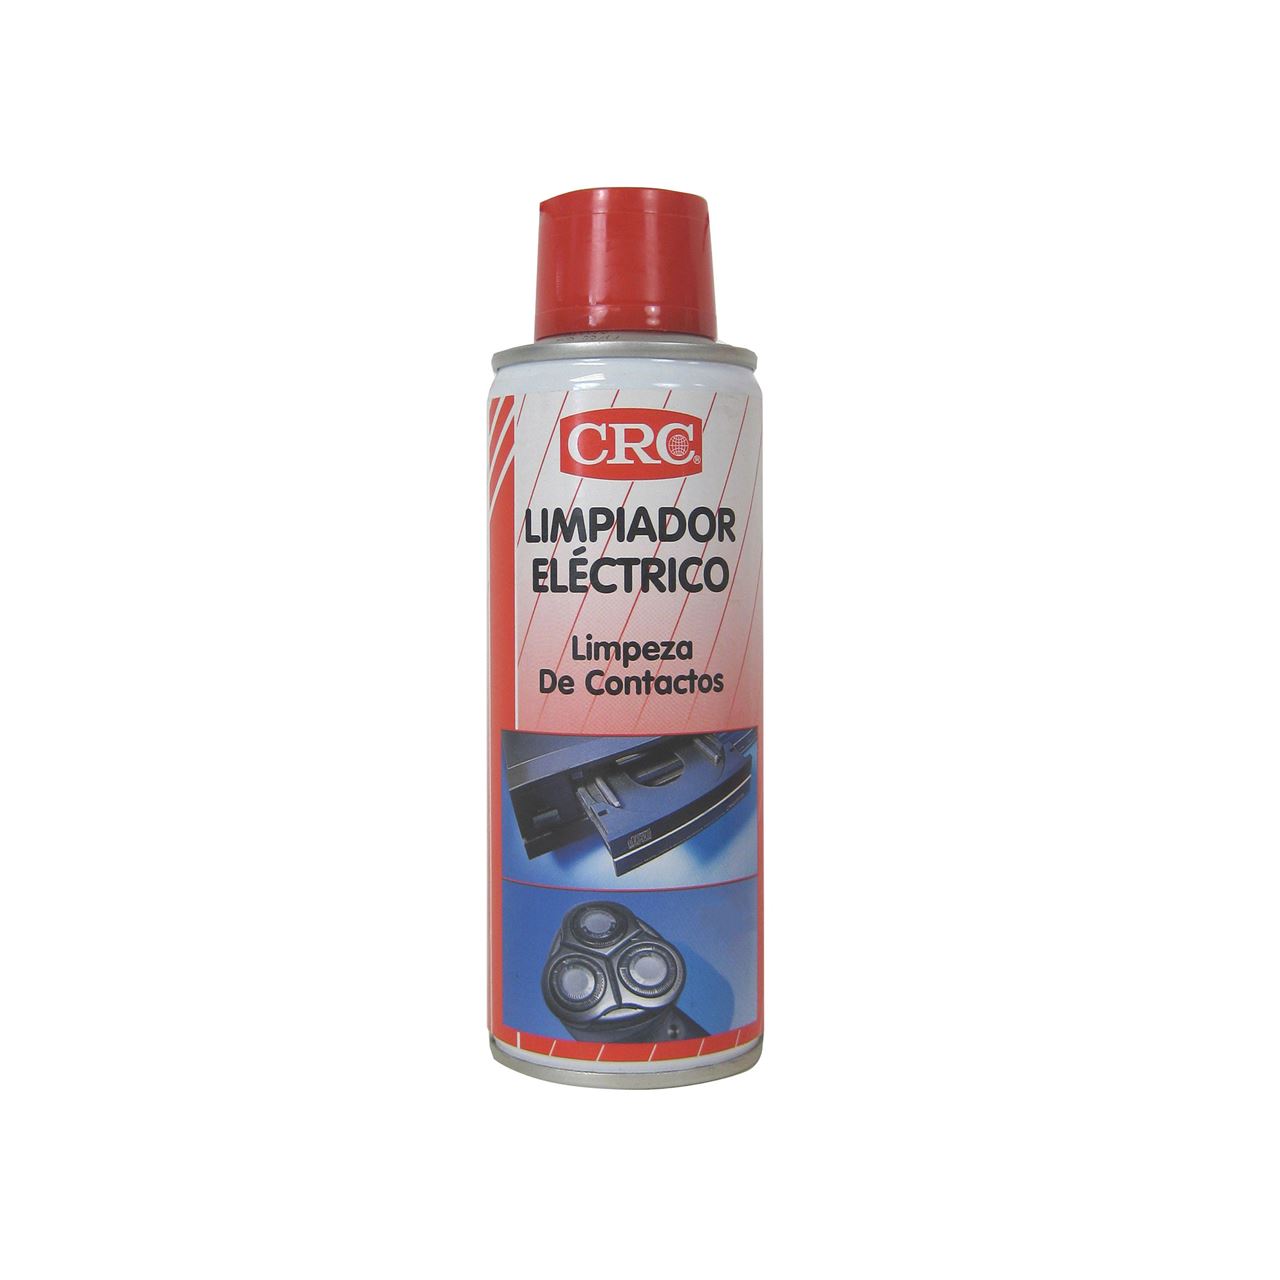 Limpiador eléctrico CRC 200 ml